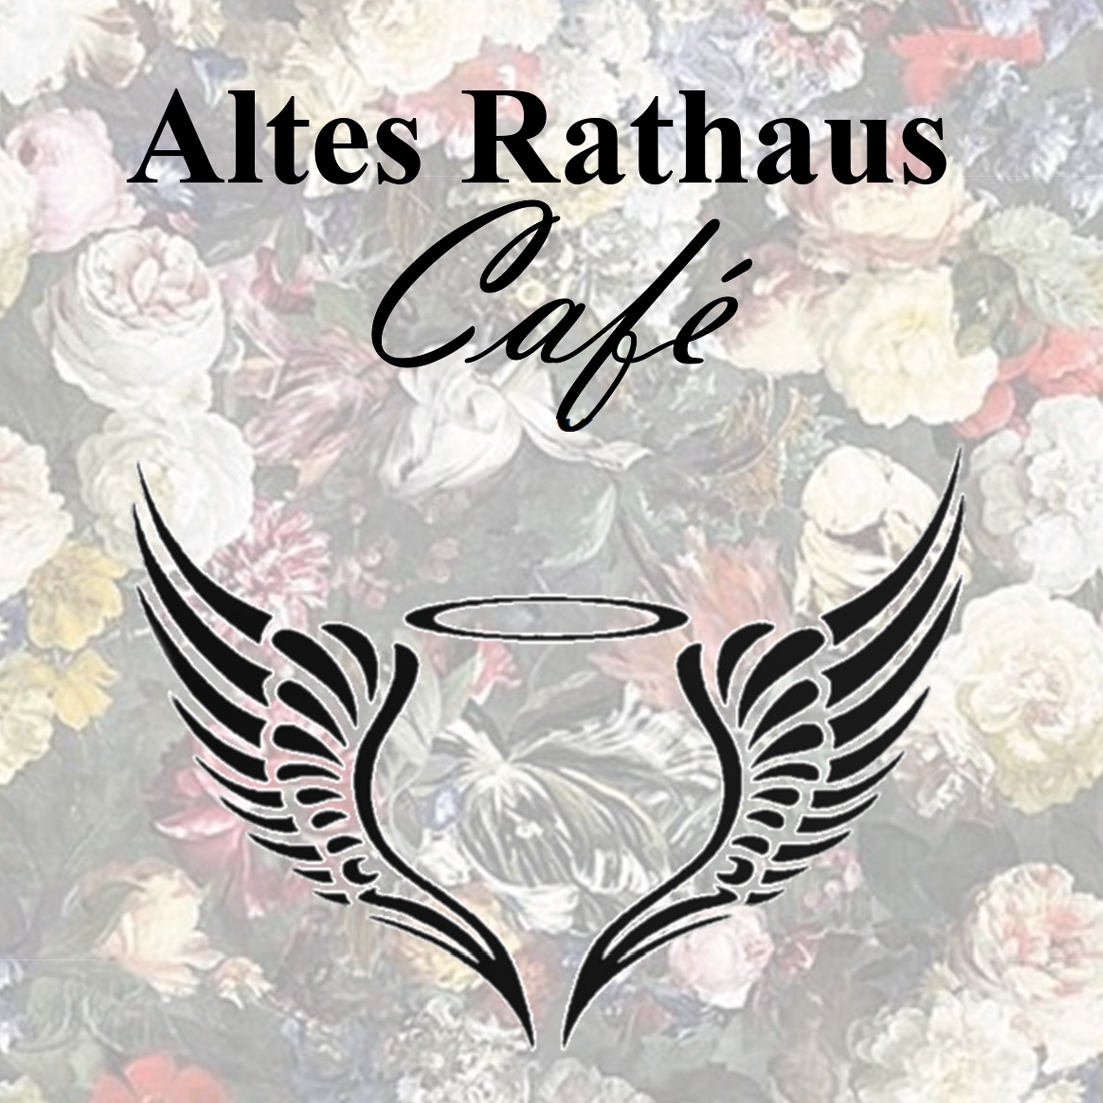 Willkommen | Café Altes Rathaus